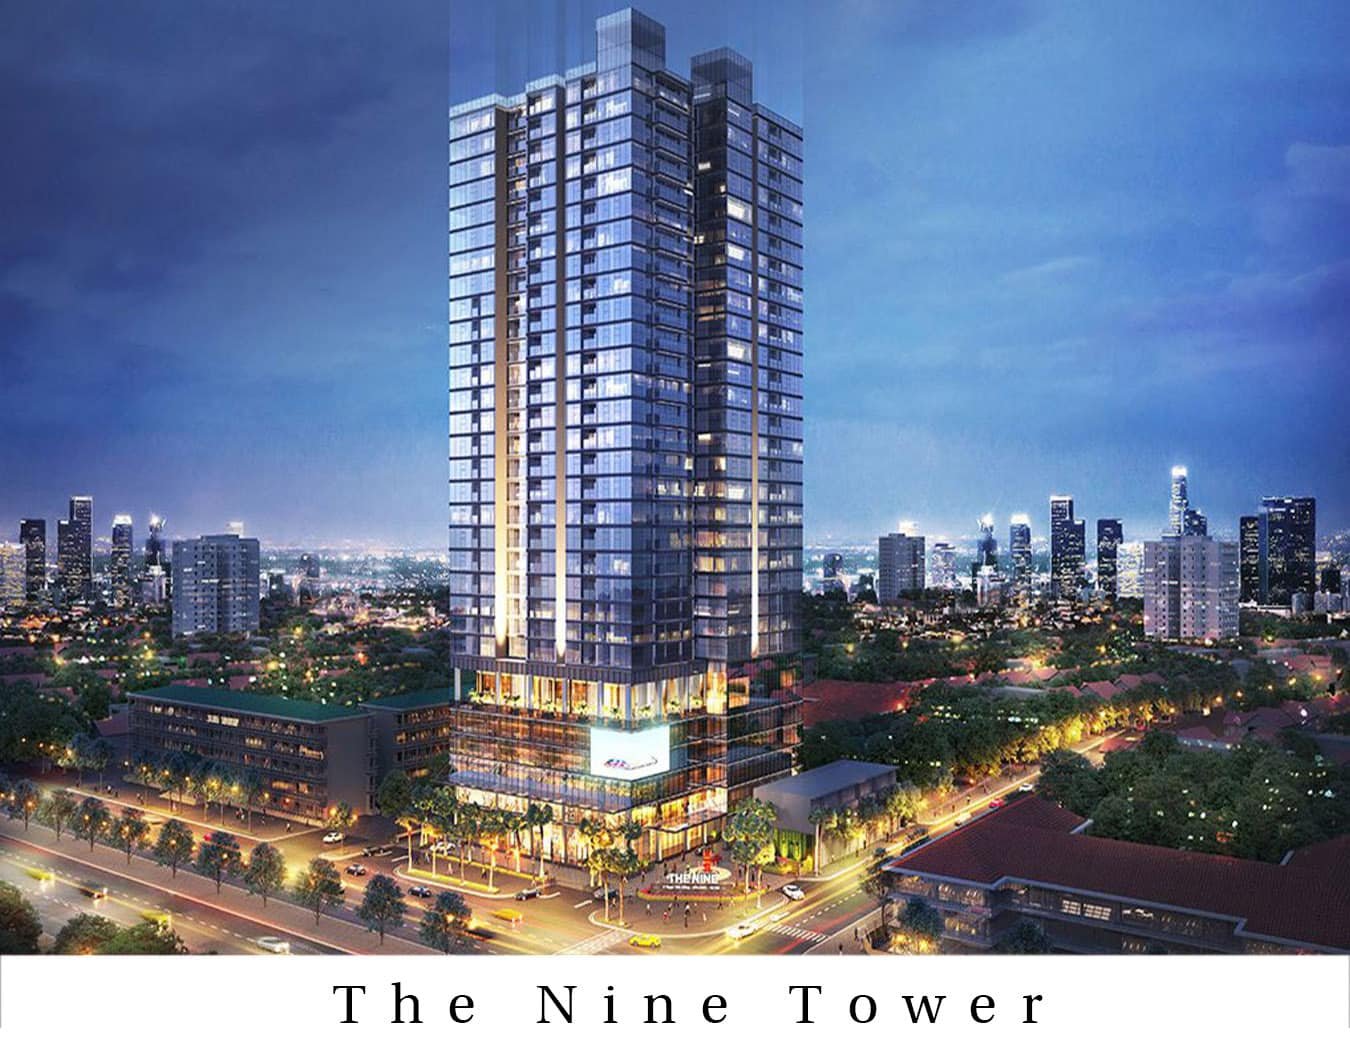 Cho thuê văn phòng Hot nhất Quận Cầu Giấy từ 300k/m2 dự án The Nine Tower